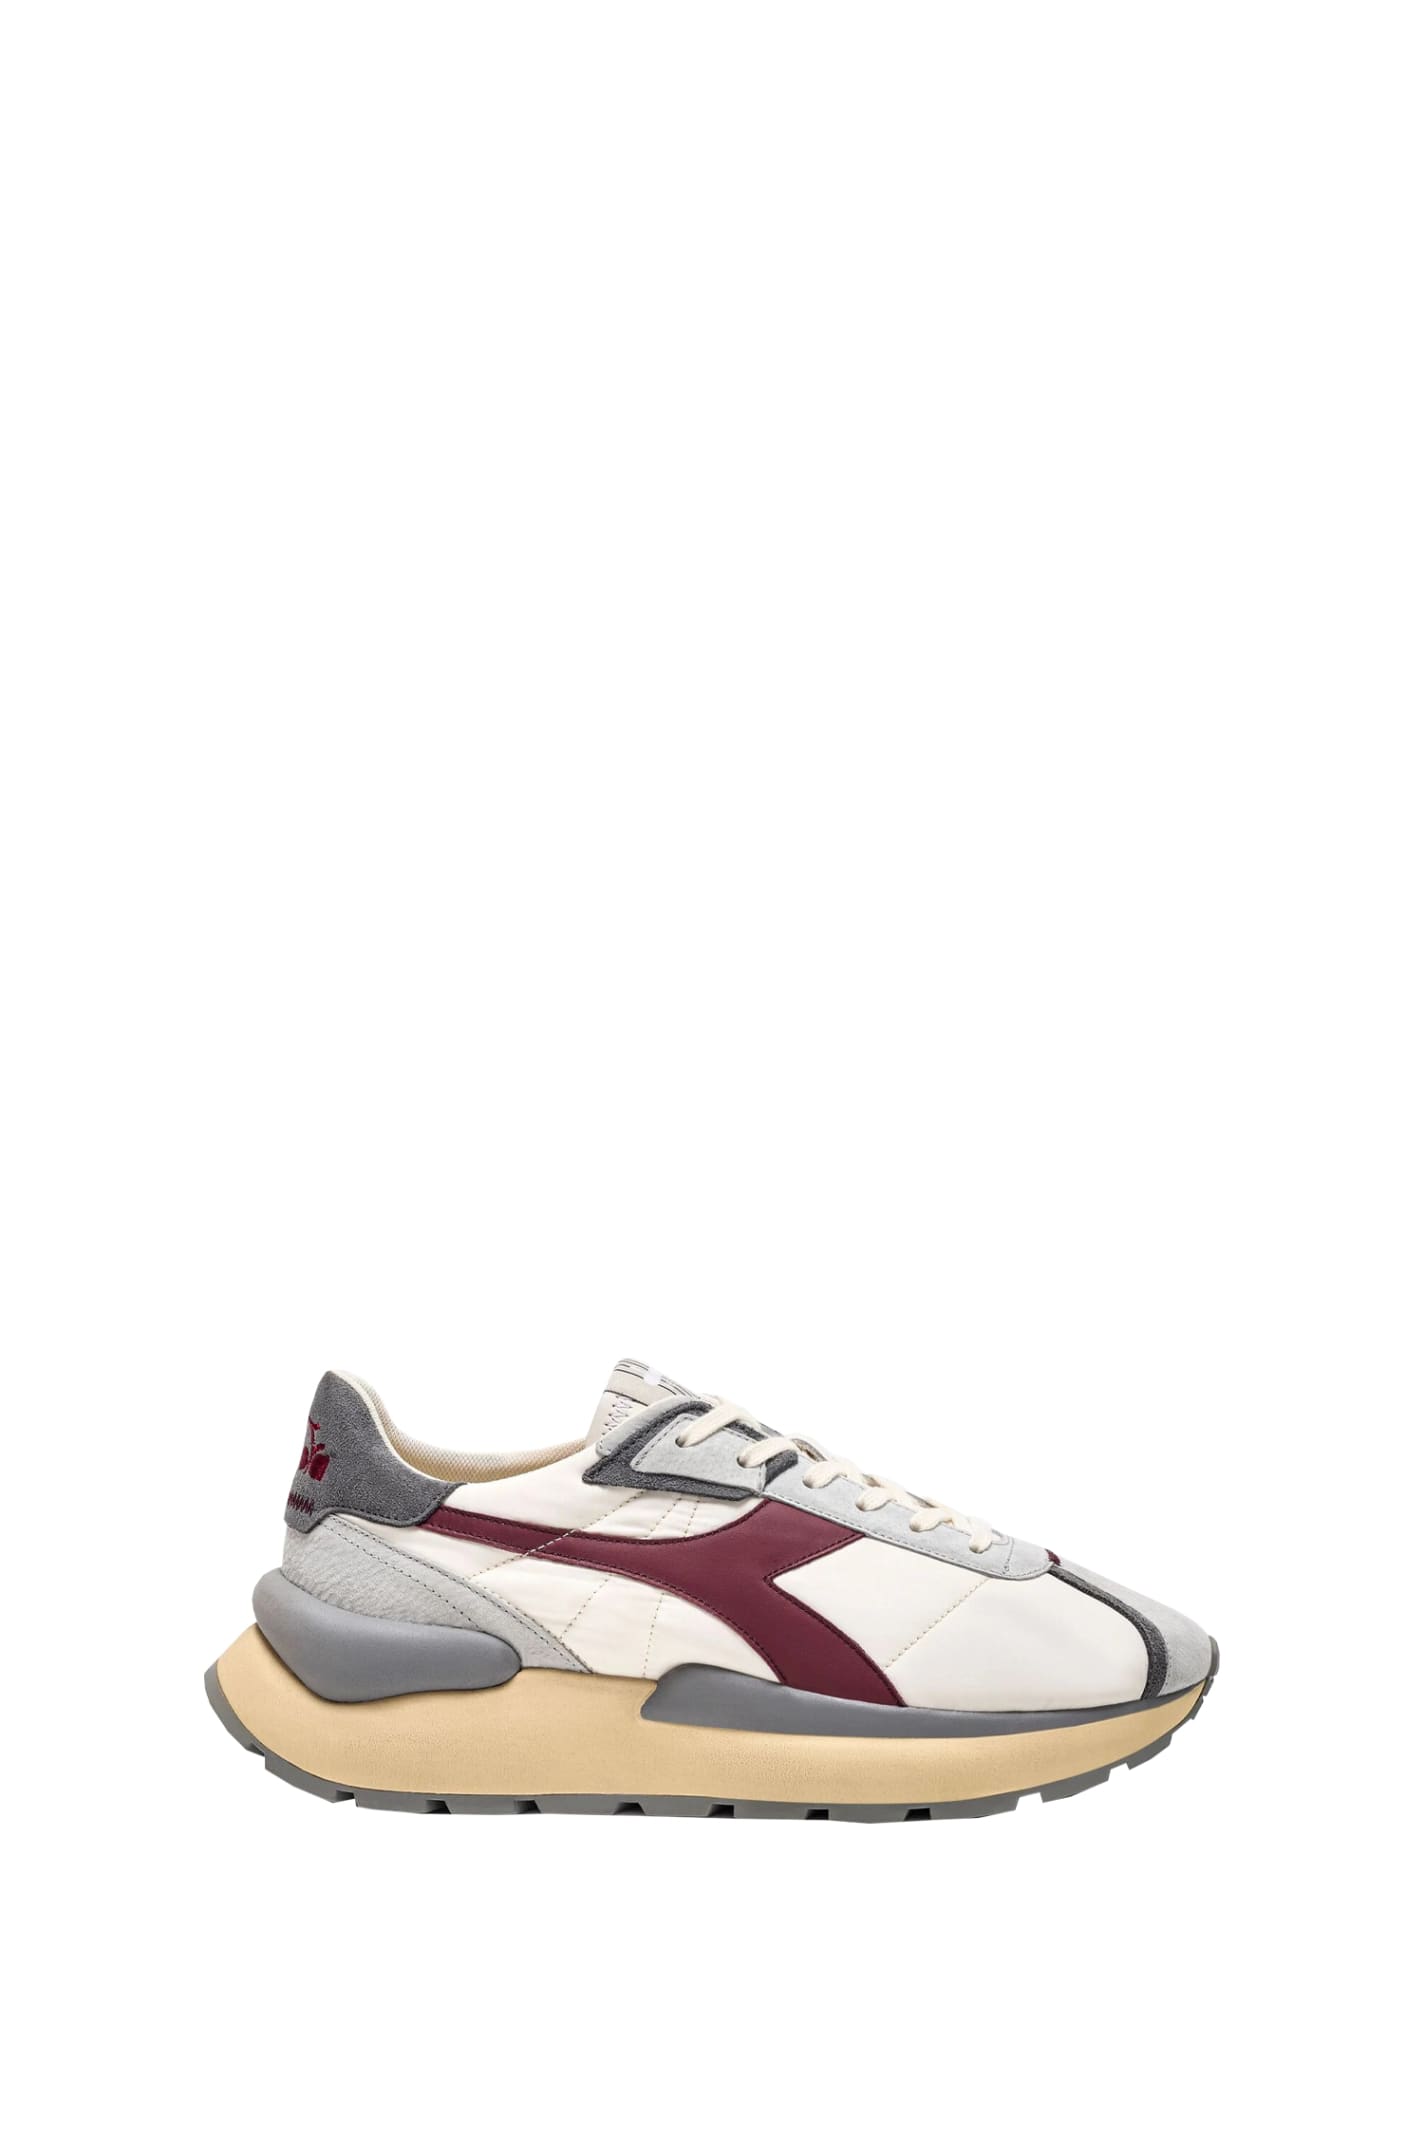 Diadora Sneakers In Bianco Rosso Tibetano